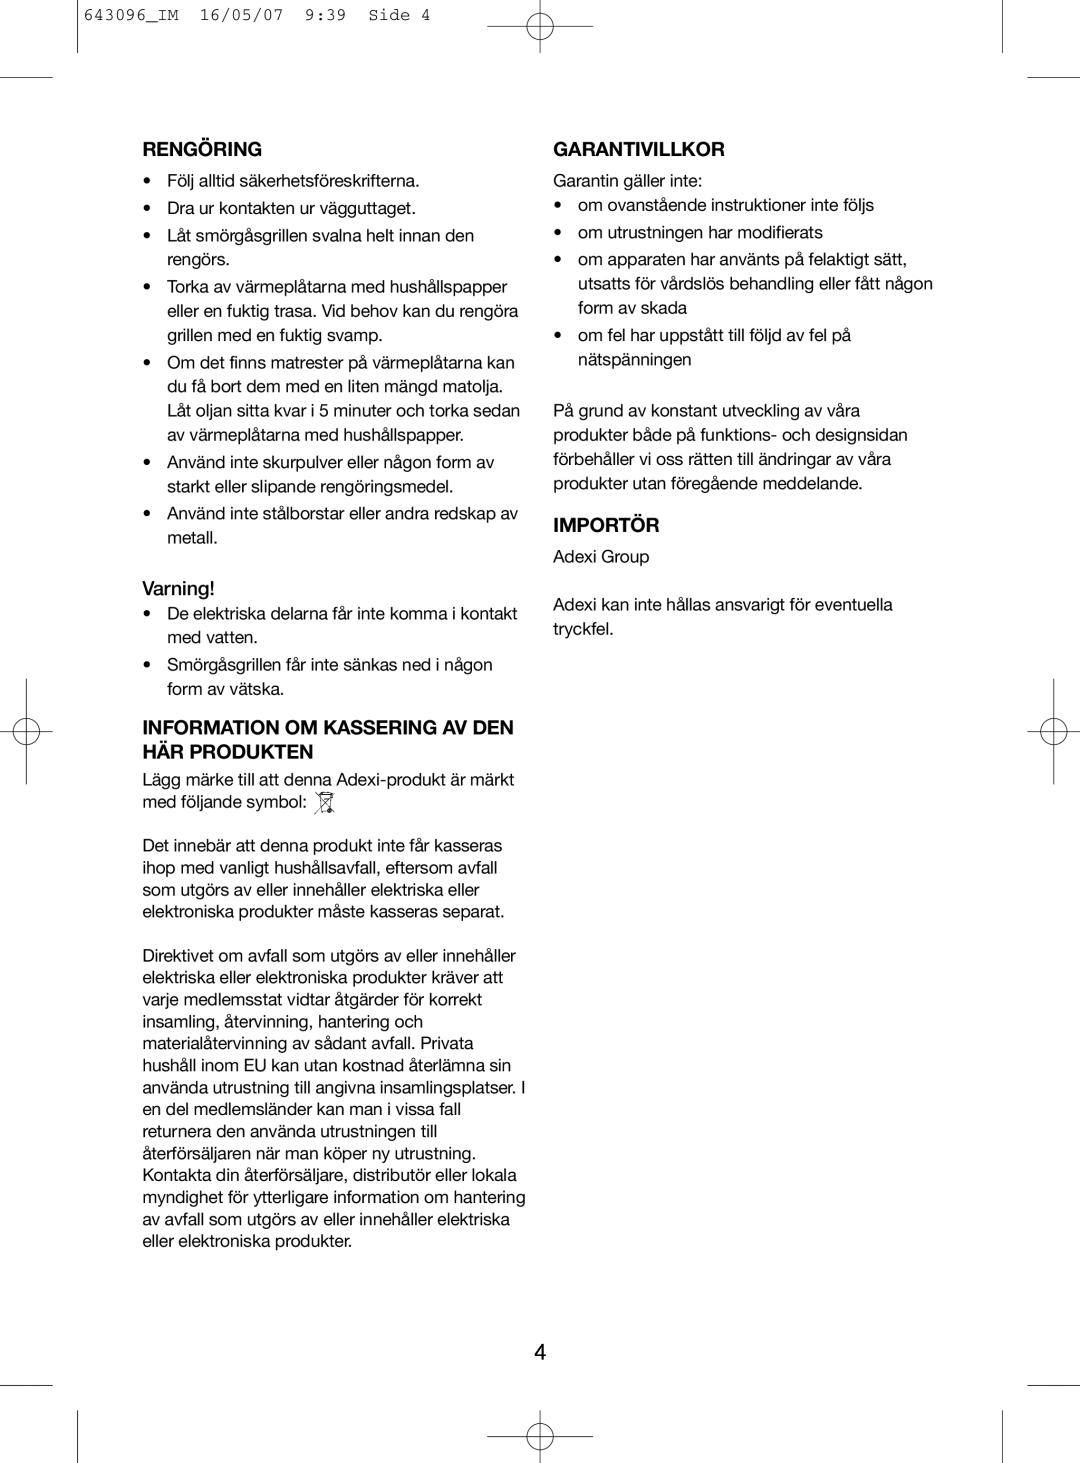 Melissa 143-074 manual Rengöring, Garantivillkor, Importör, Varning, Information Om Kassering Av Den Här Produkten 